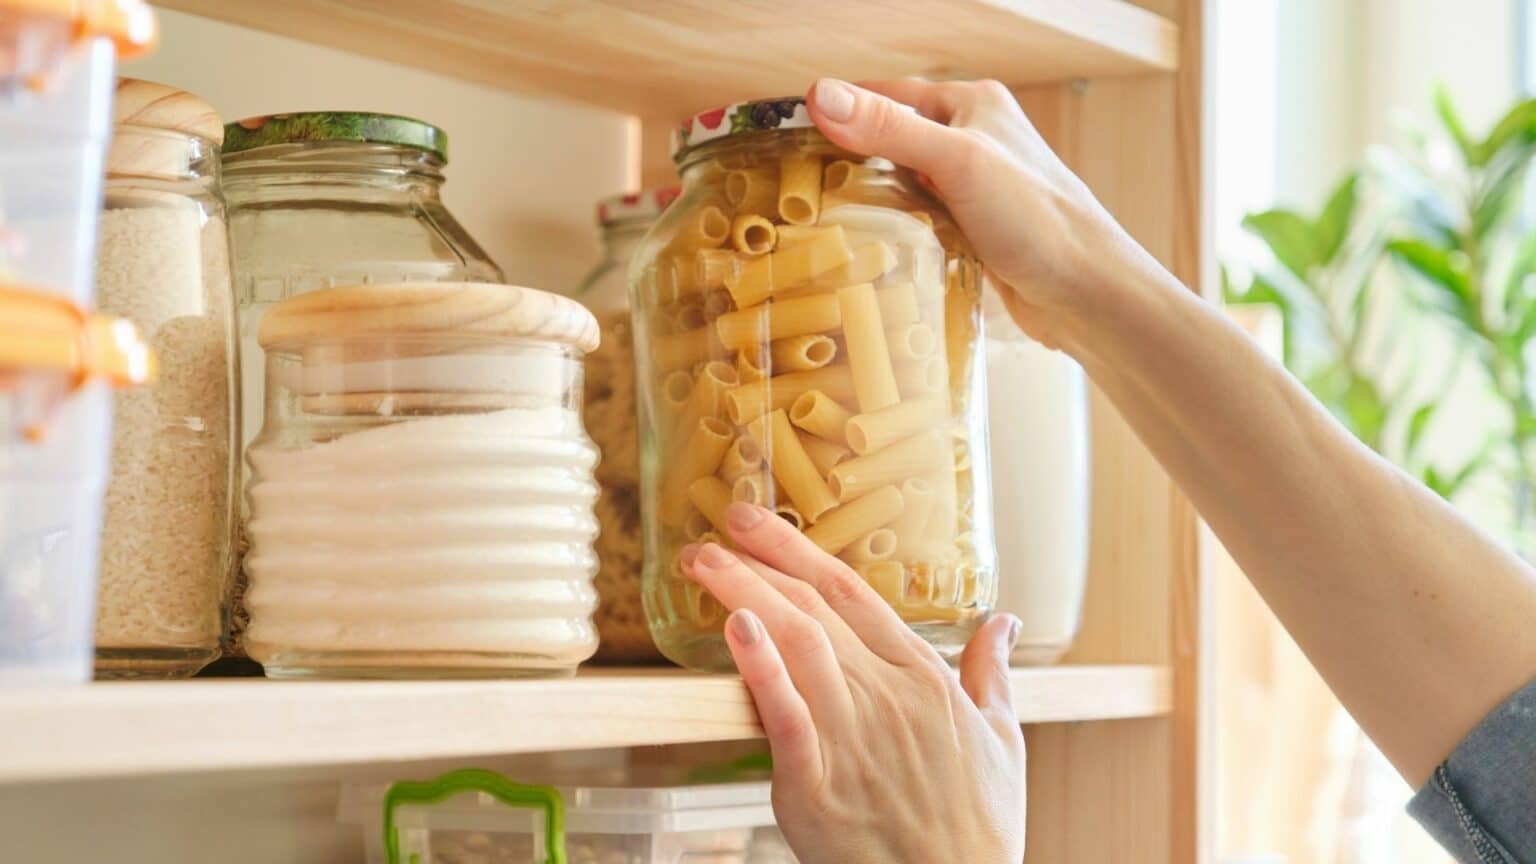 Why Put Pasta in a Jar